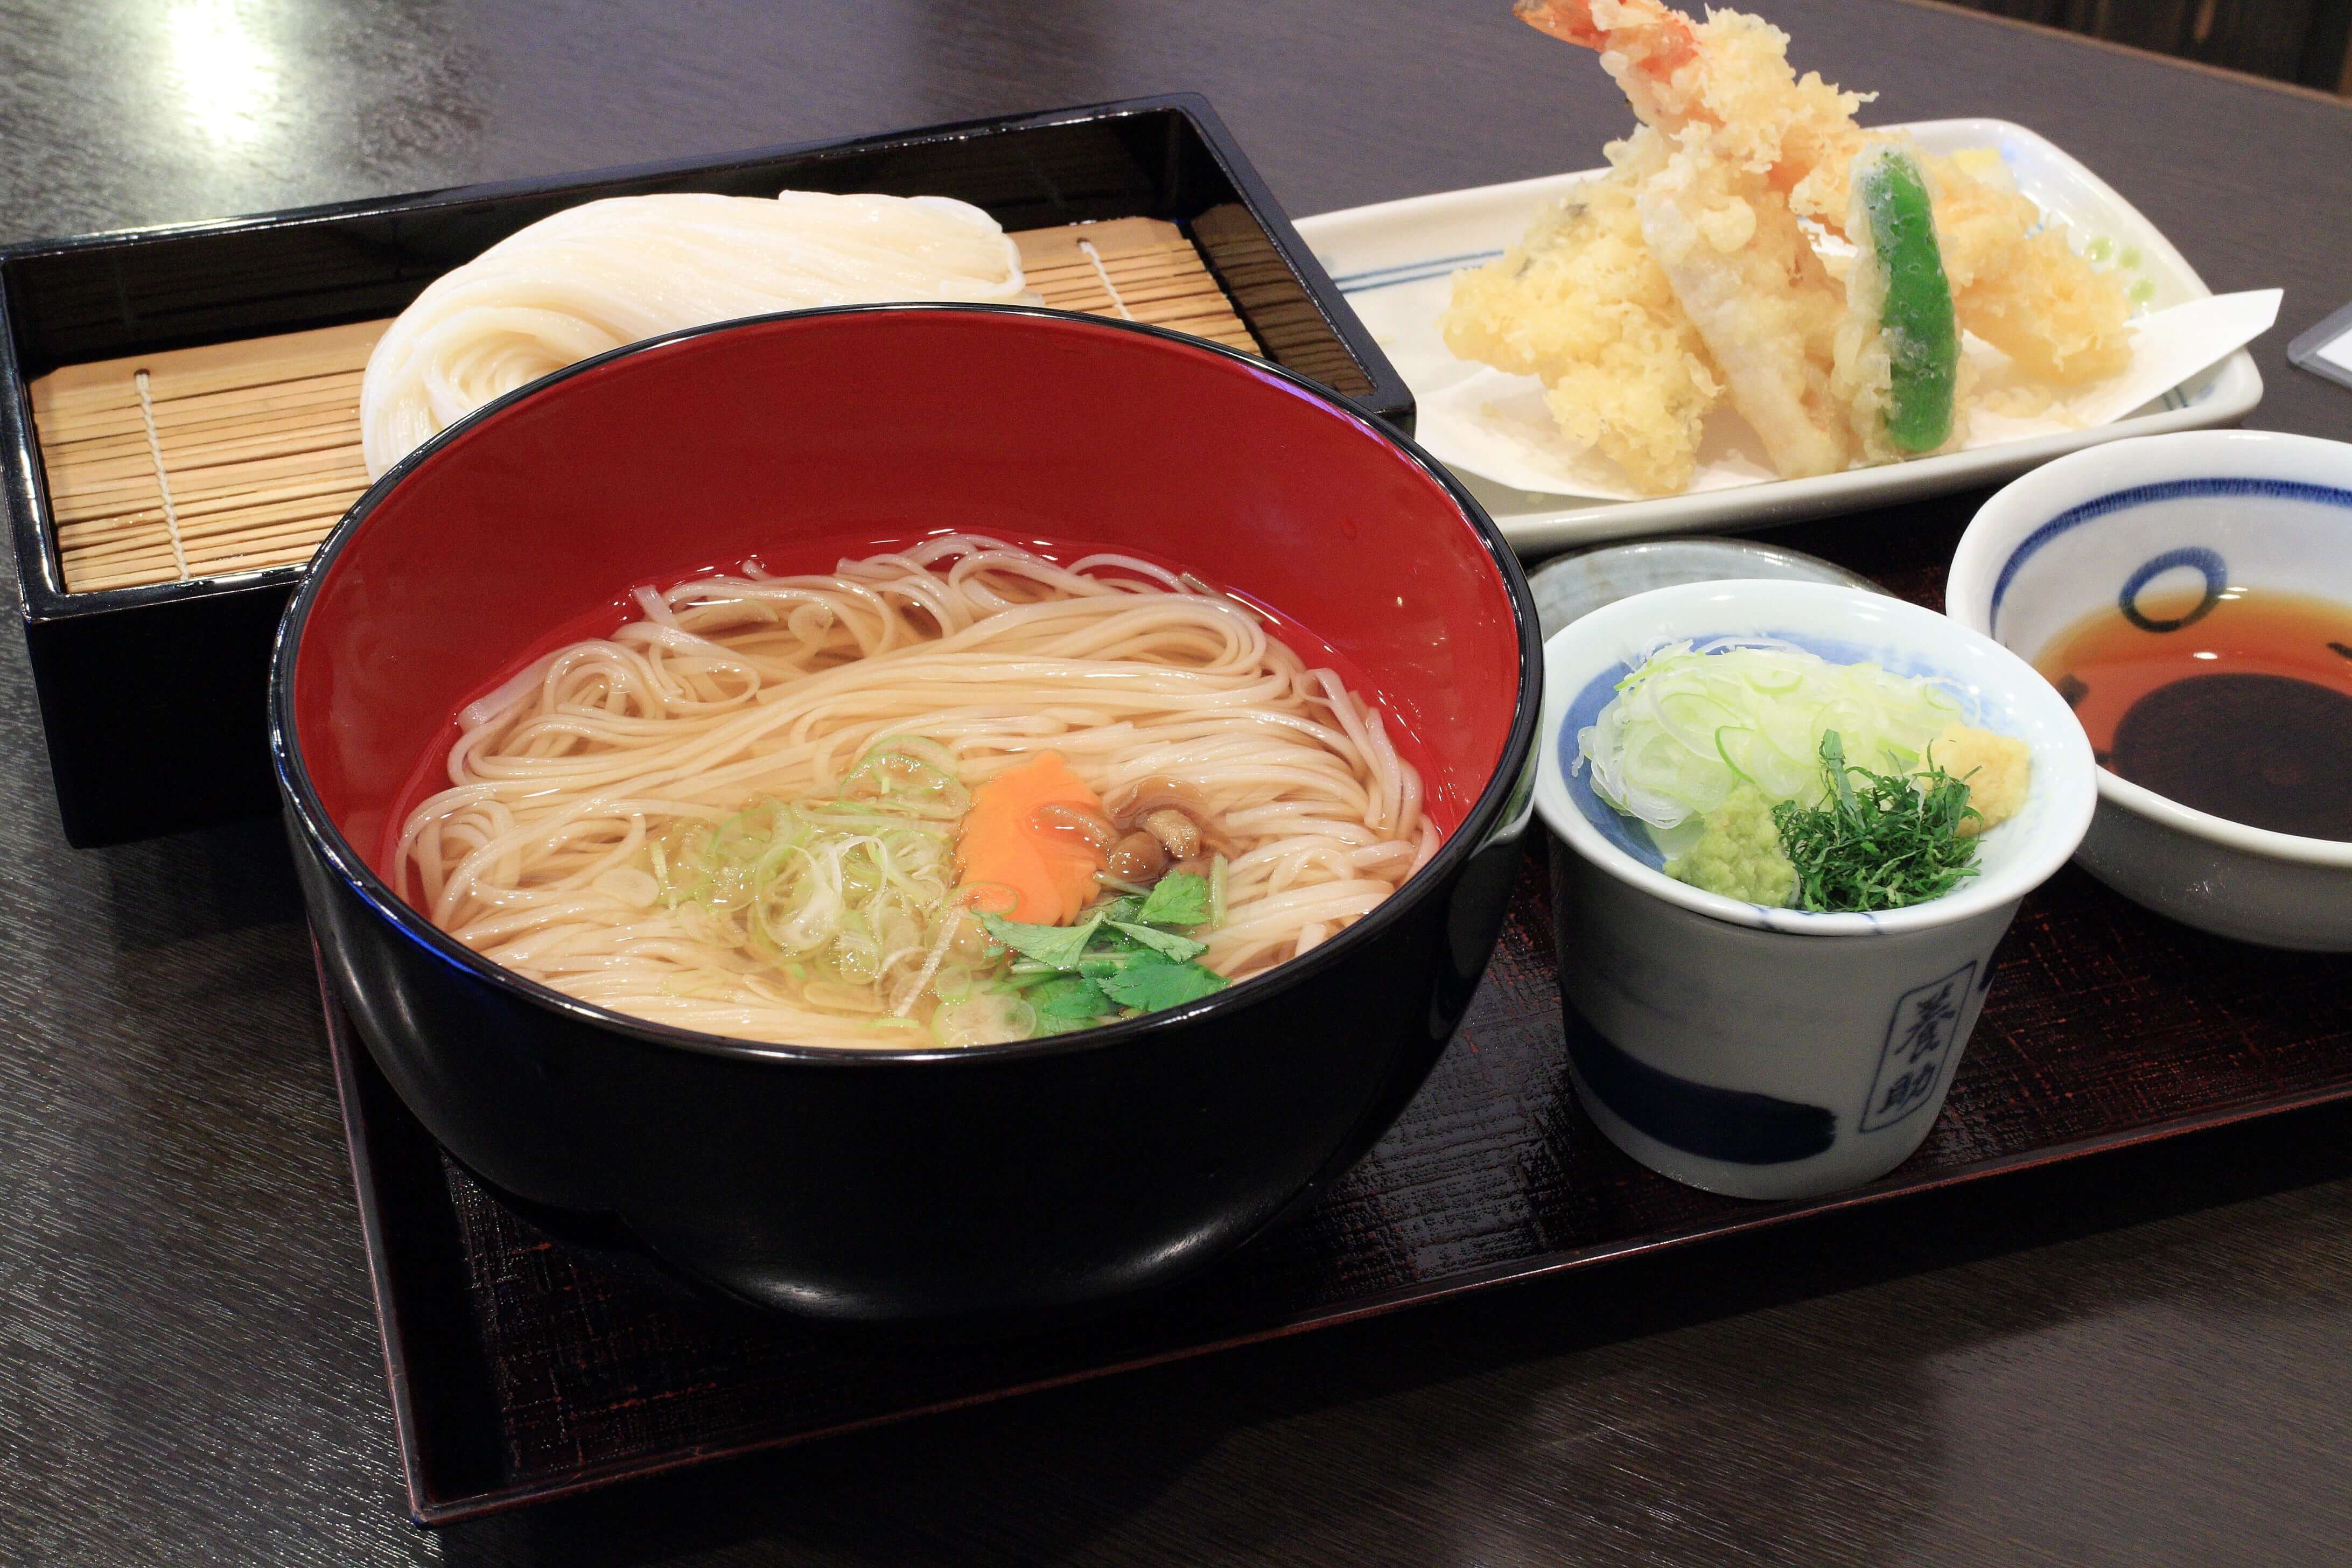 稻庭烏龍麵在清湯中加入泡菜和紫蘇葉，冬天暖呼呼的吃最棒了。(Image credit: Akita Prefecture)